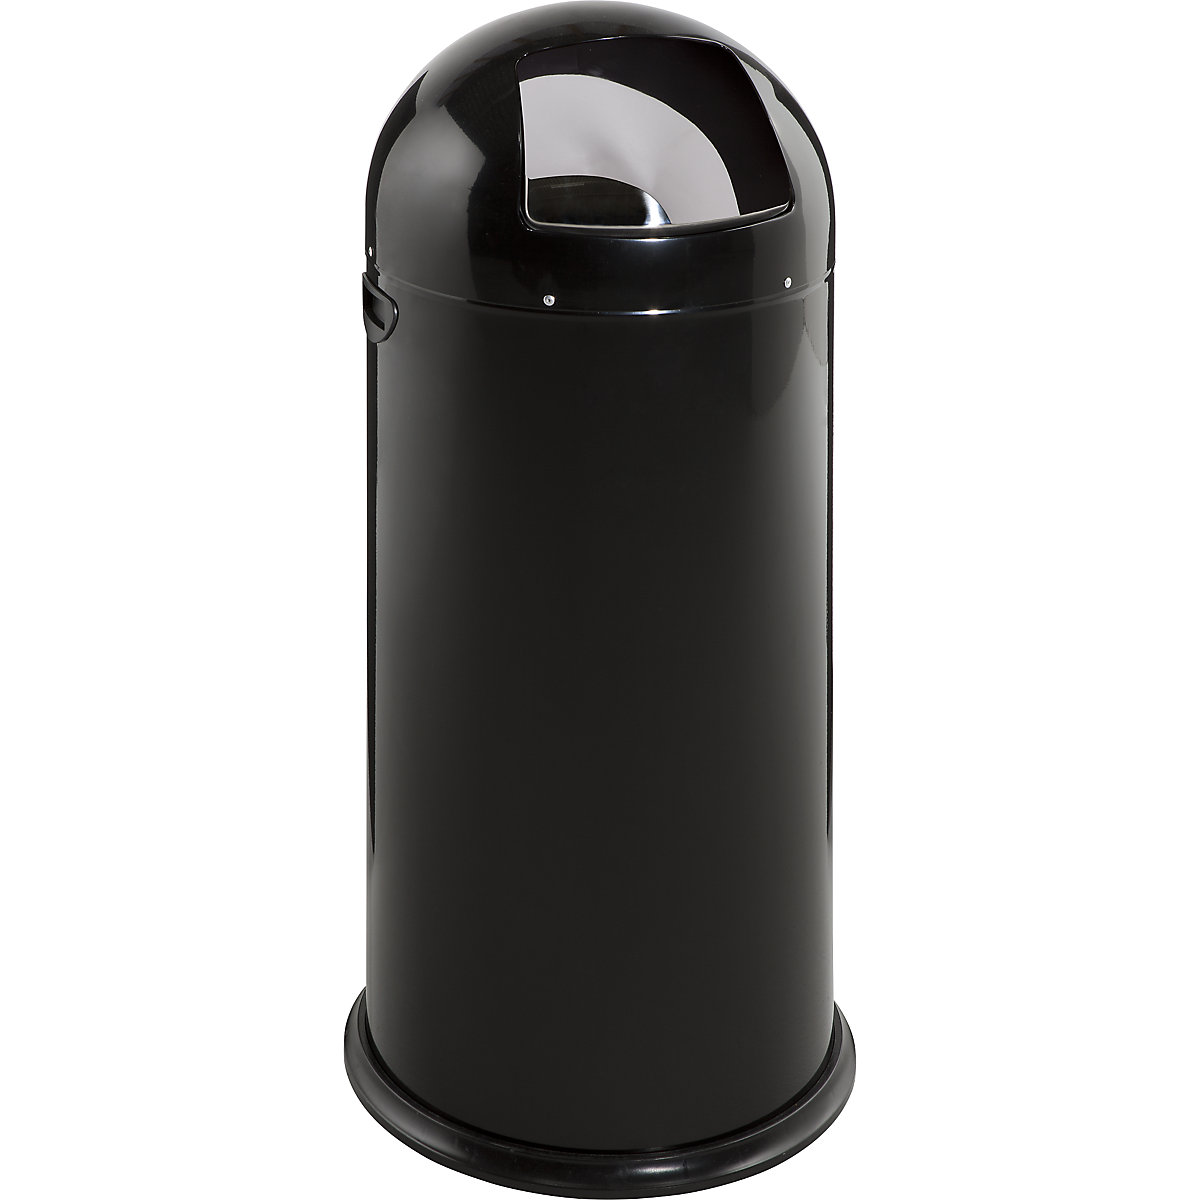 VAR – Odpadkový koš s funkcí Push, objem 52 l, výška 890 mm, hluboce černá